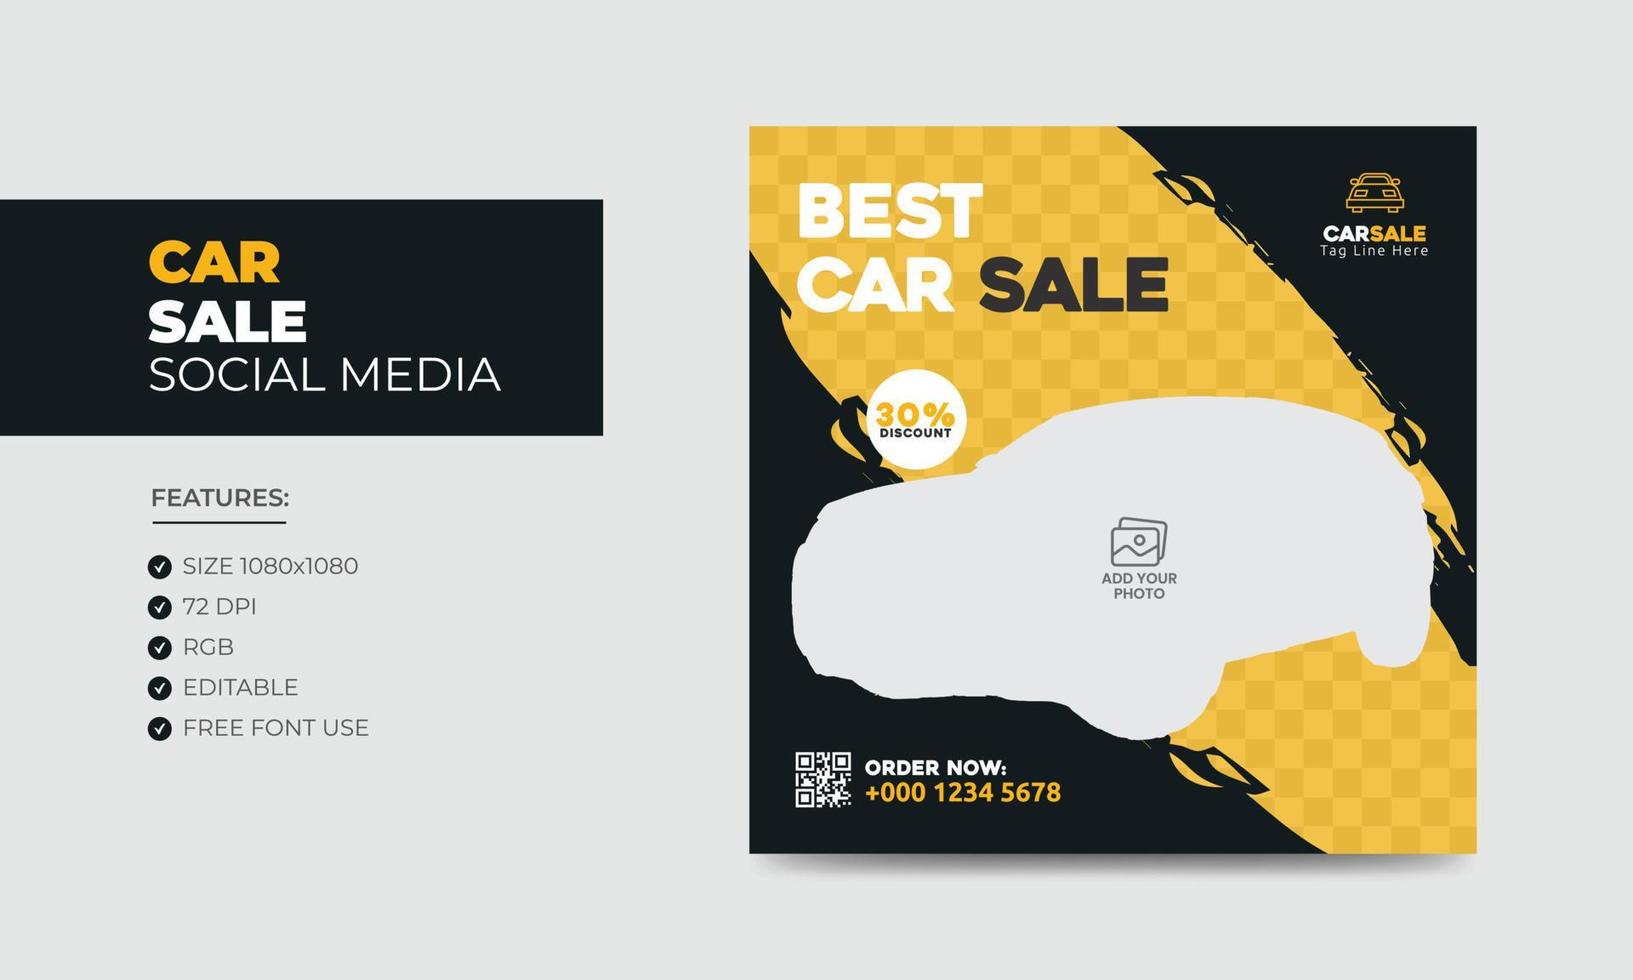 Car Sale Promotion Social Media Post Banner Design Template. Car Rental Service Social Media Ads Banner vector